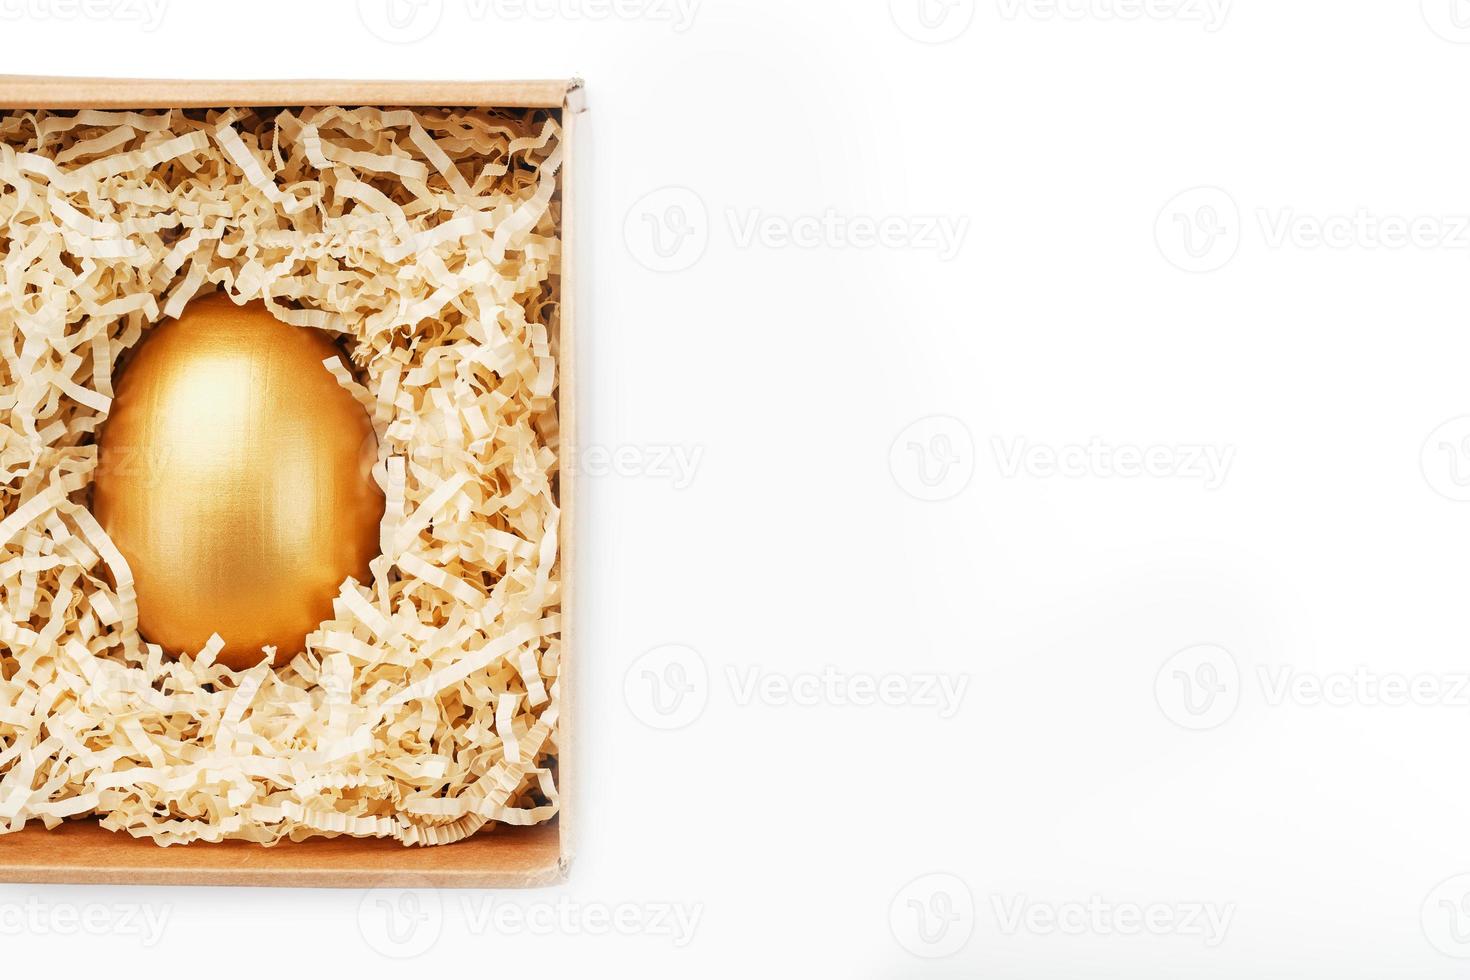 ovo de ouro em uma caixa em um conceito de fundo branco de exclusividade, melhor escolha, prêmio, surpresa especial, presente caro. o conceito de minimalismo. foto